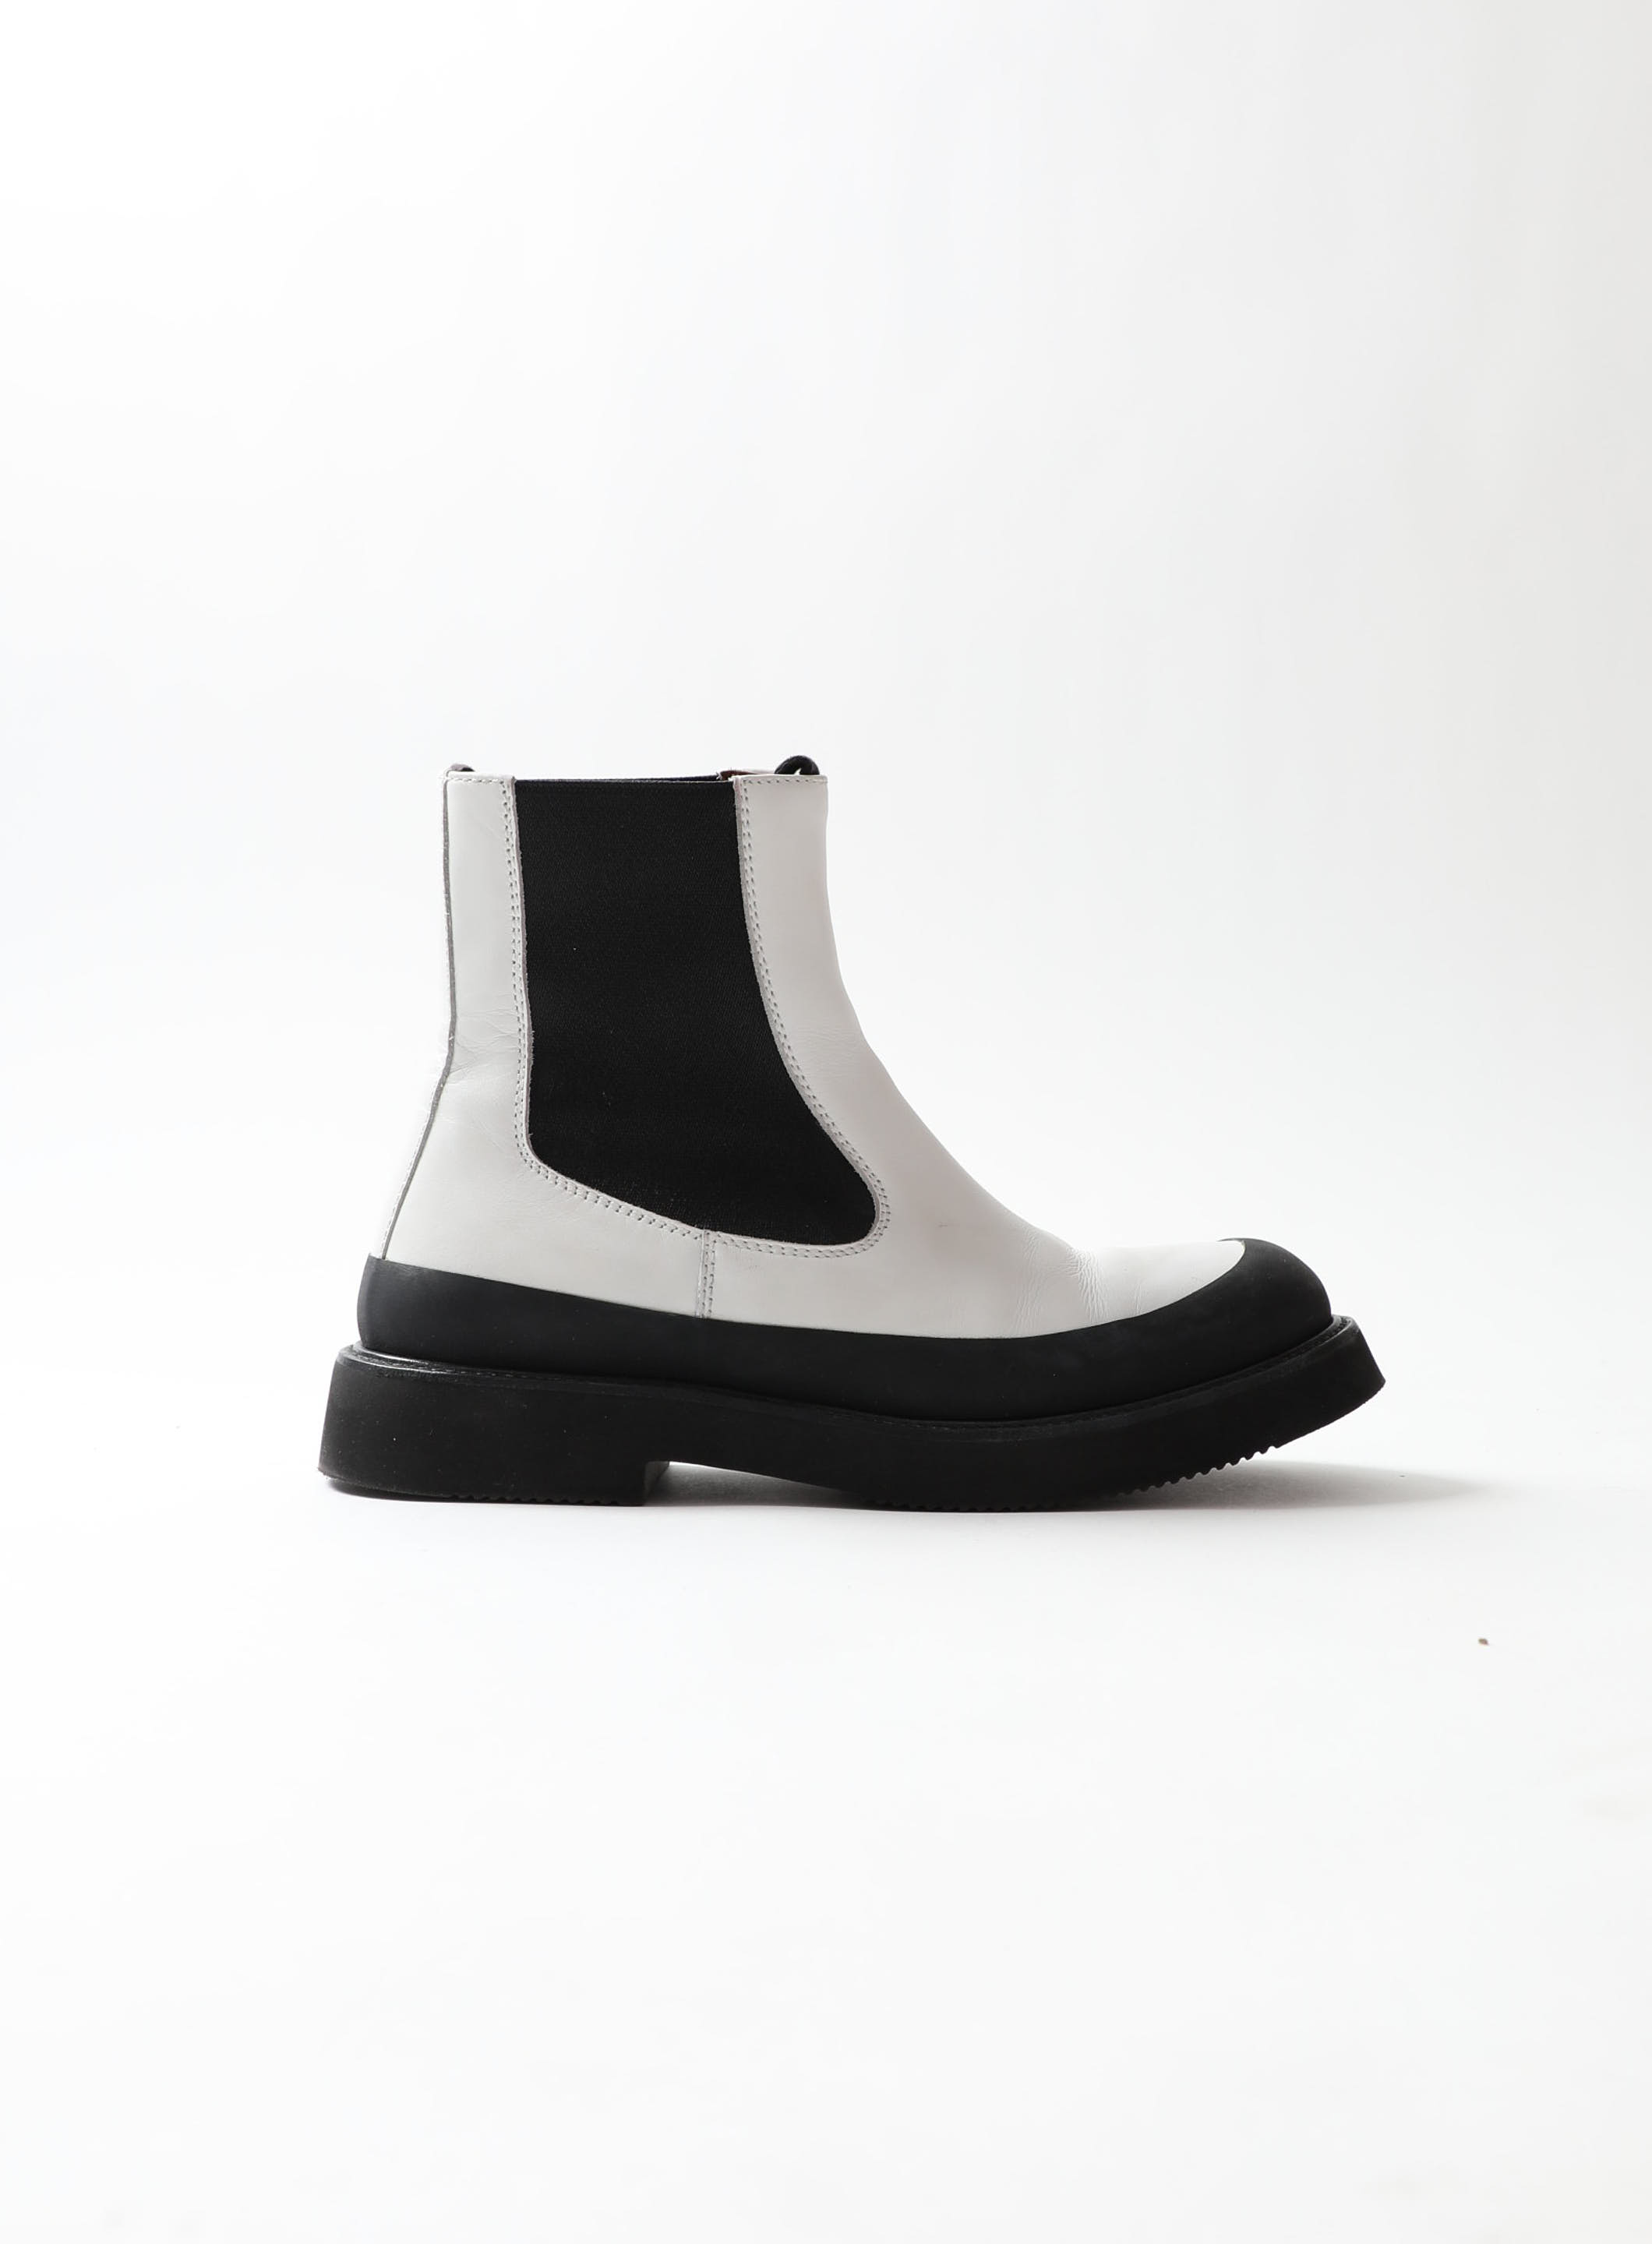 Louis Vuitton Parisienne Ankle Boot BLACK. Size 38.0